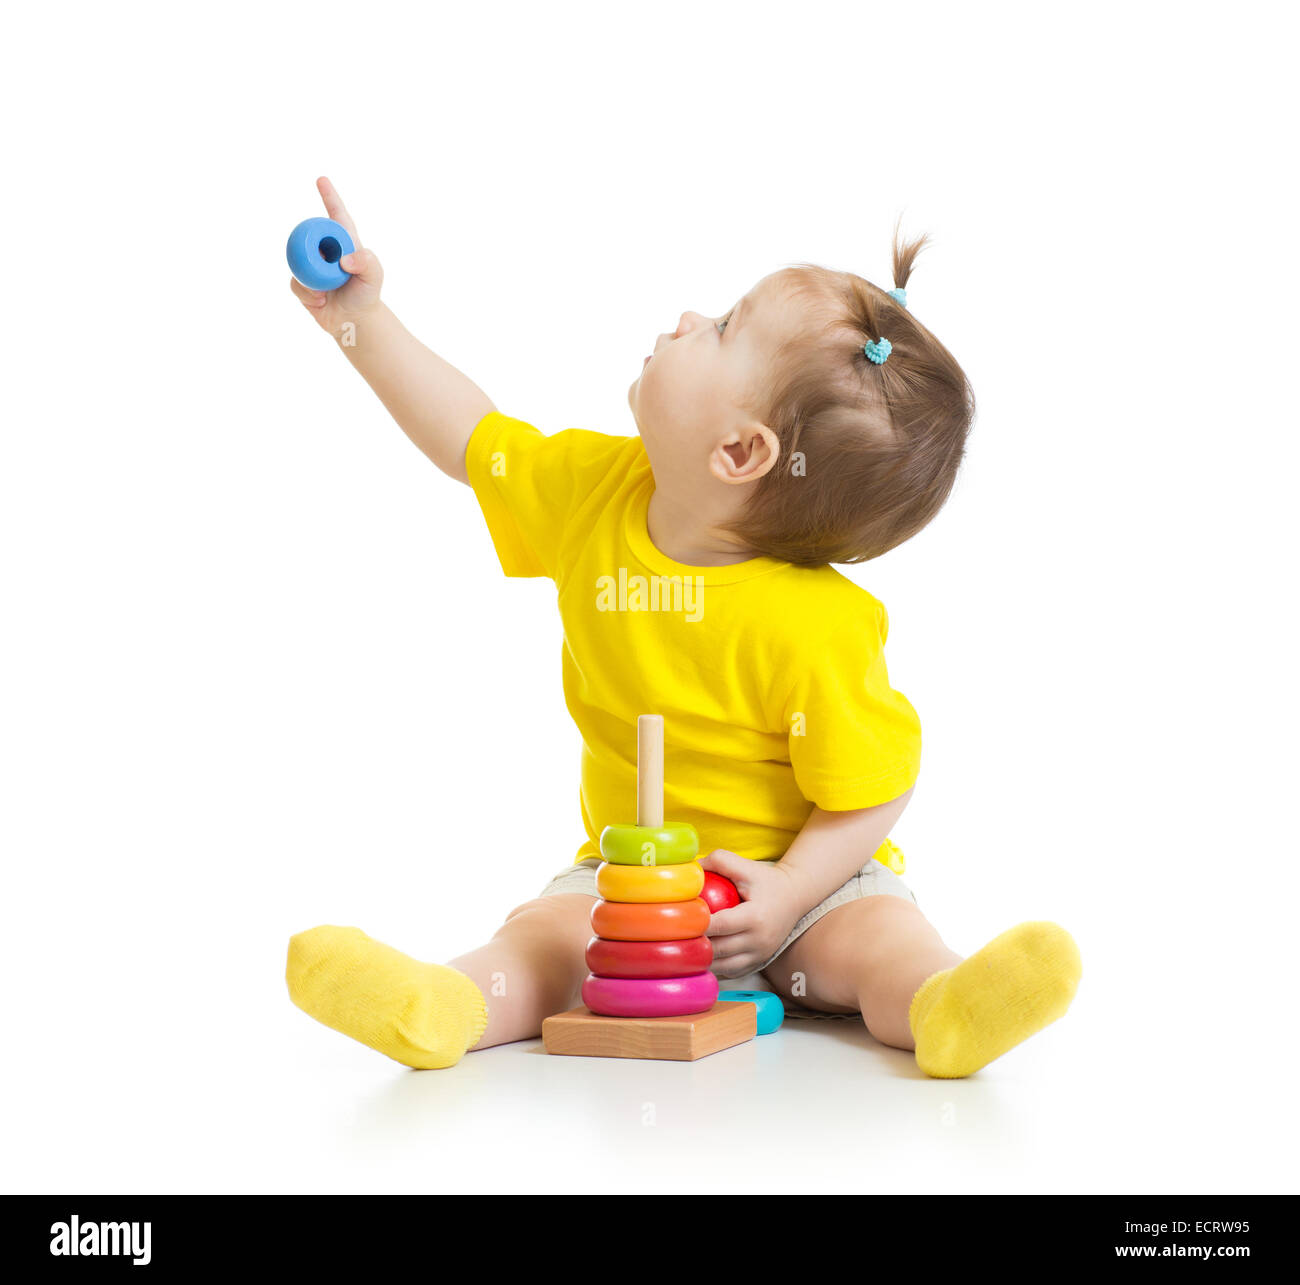 Bebé jugando con juguetes coloridos y buscando aislado en blanco Foto de stock